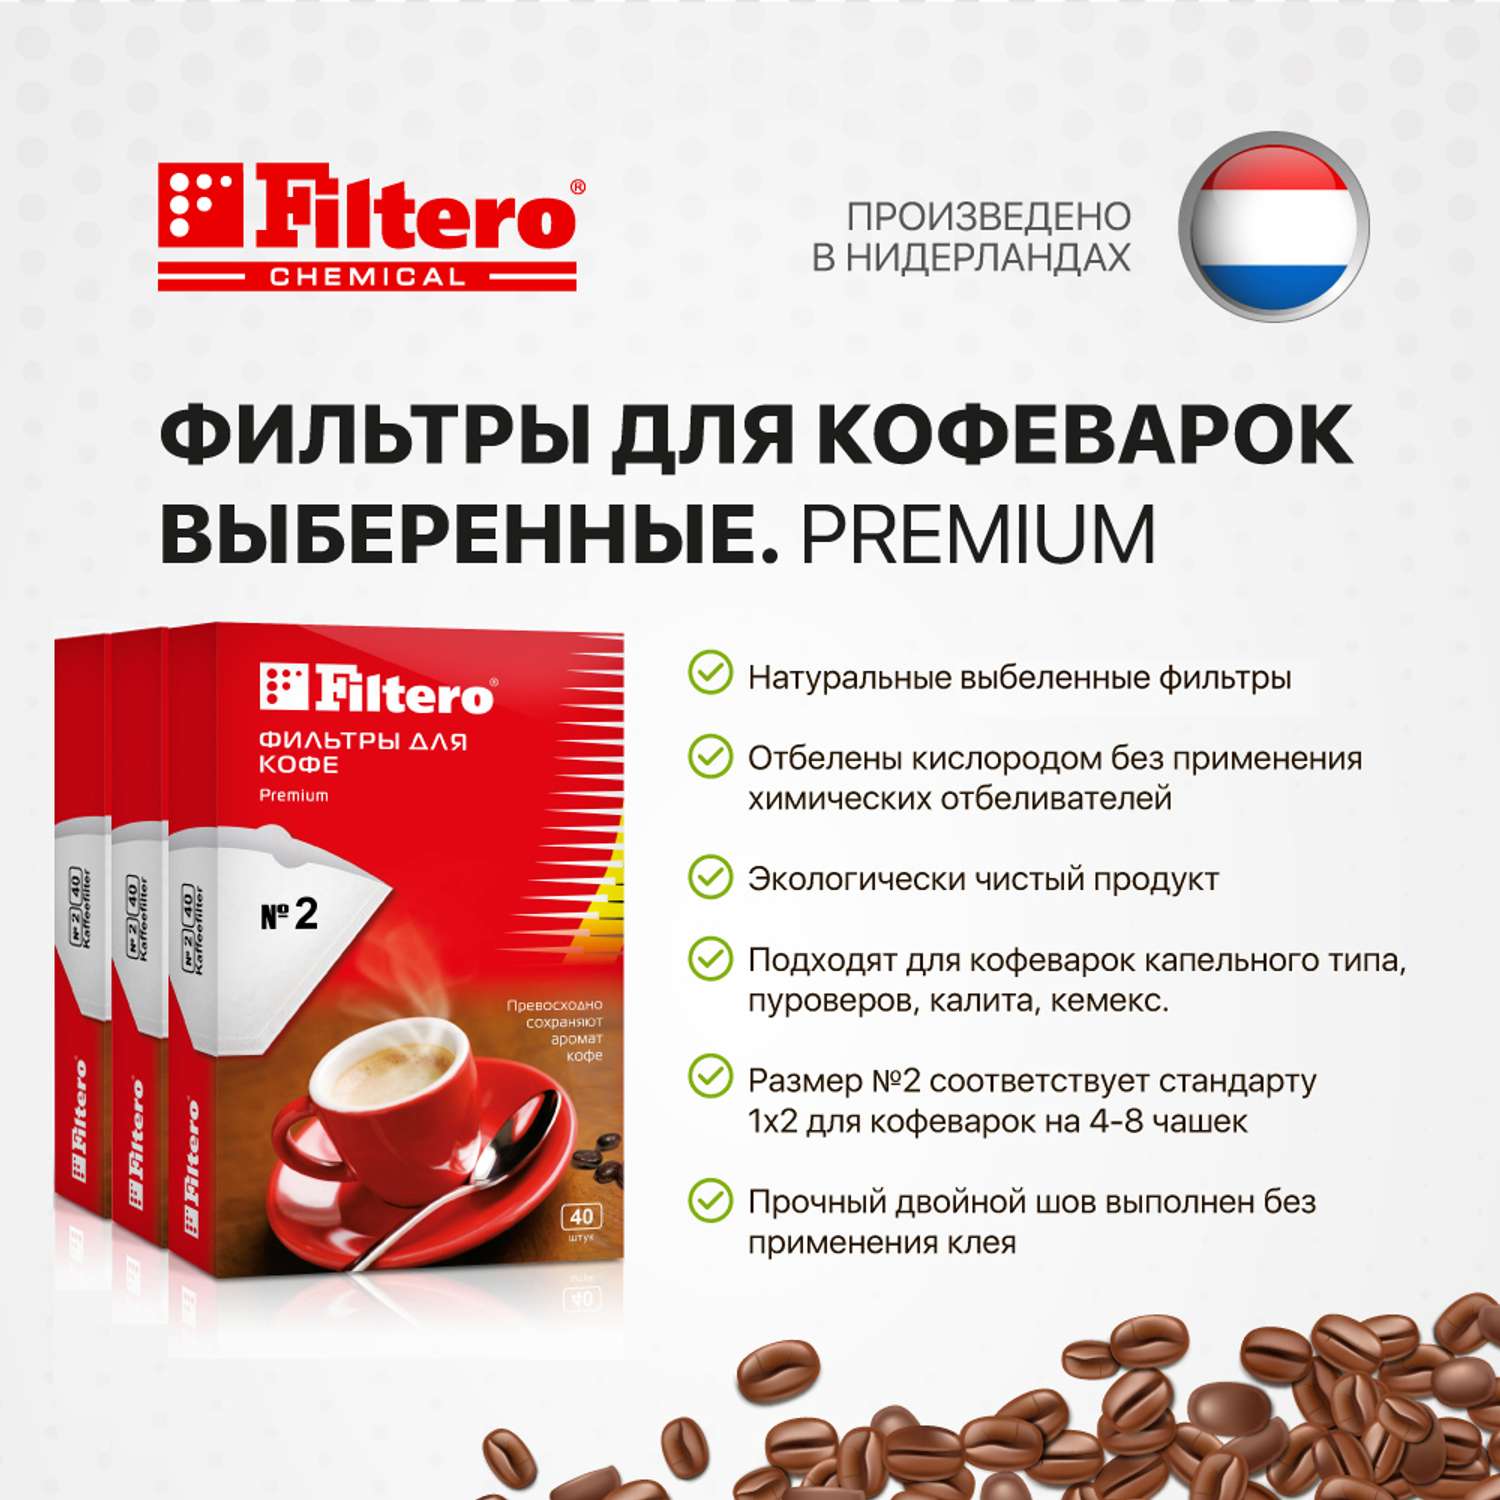 Комплект фильтров Filtero для кофеварки №2/120шт белые Premium - фото 3